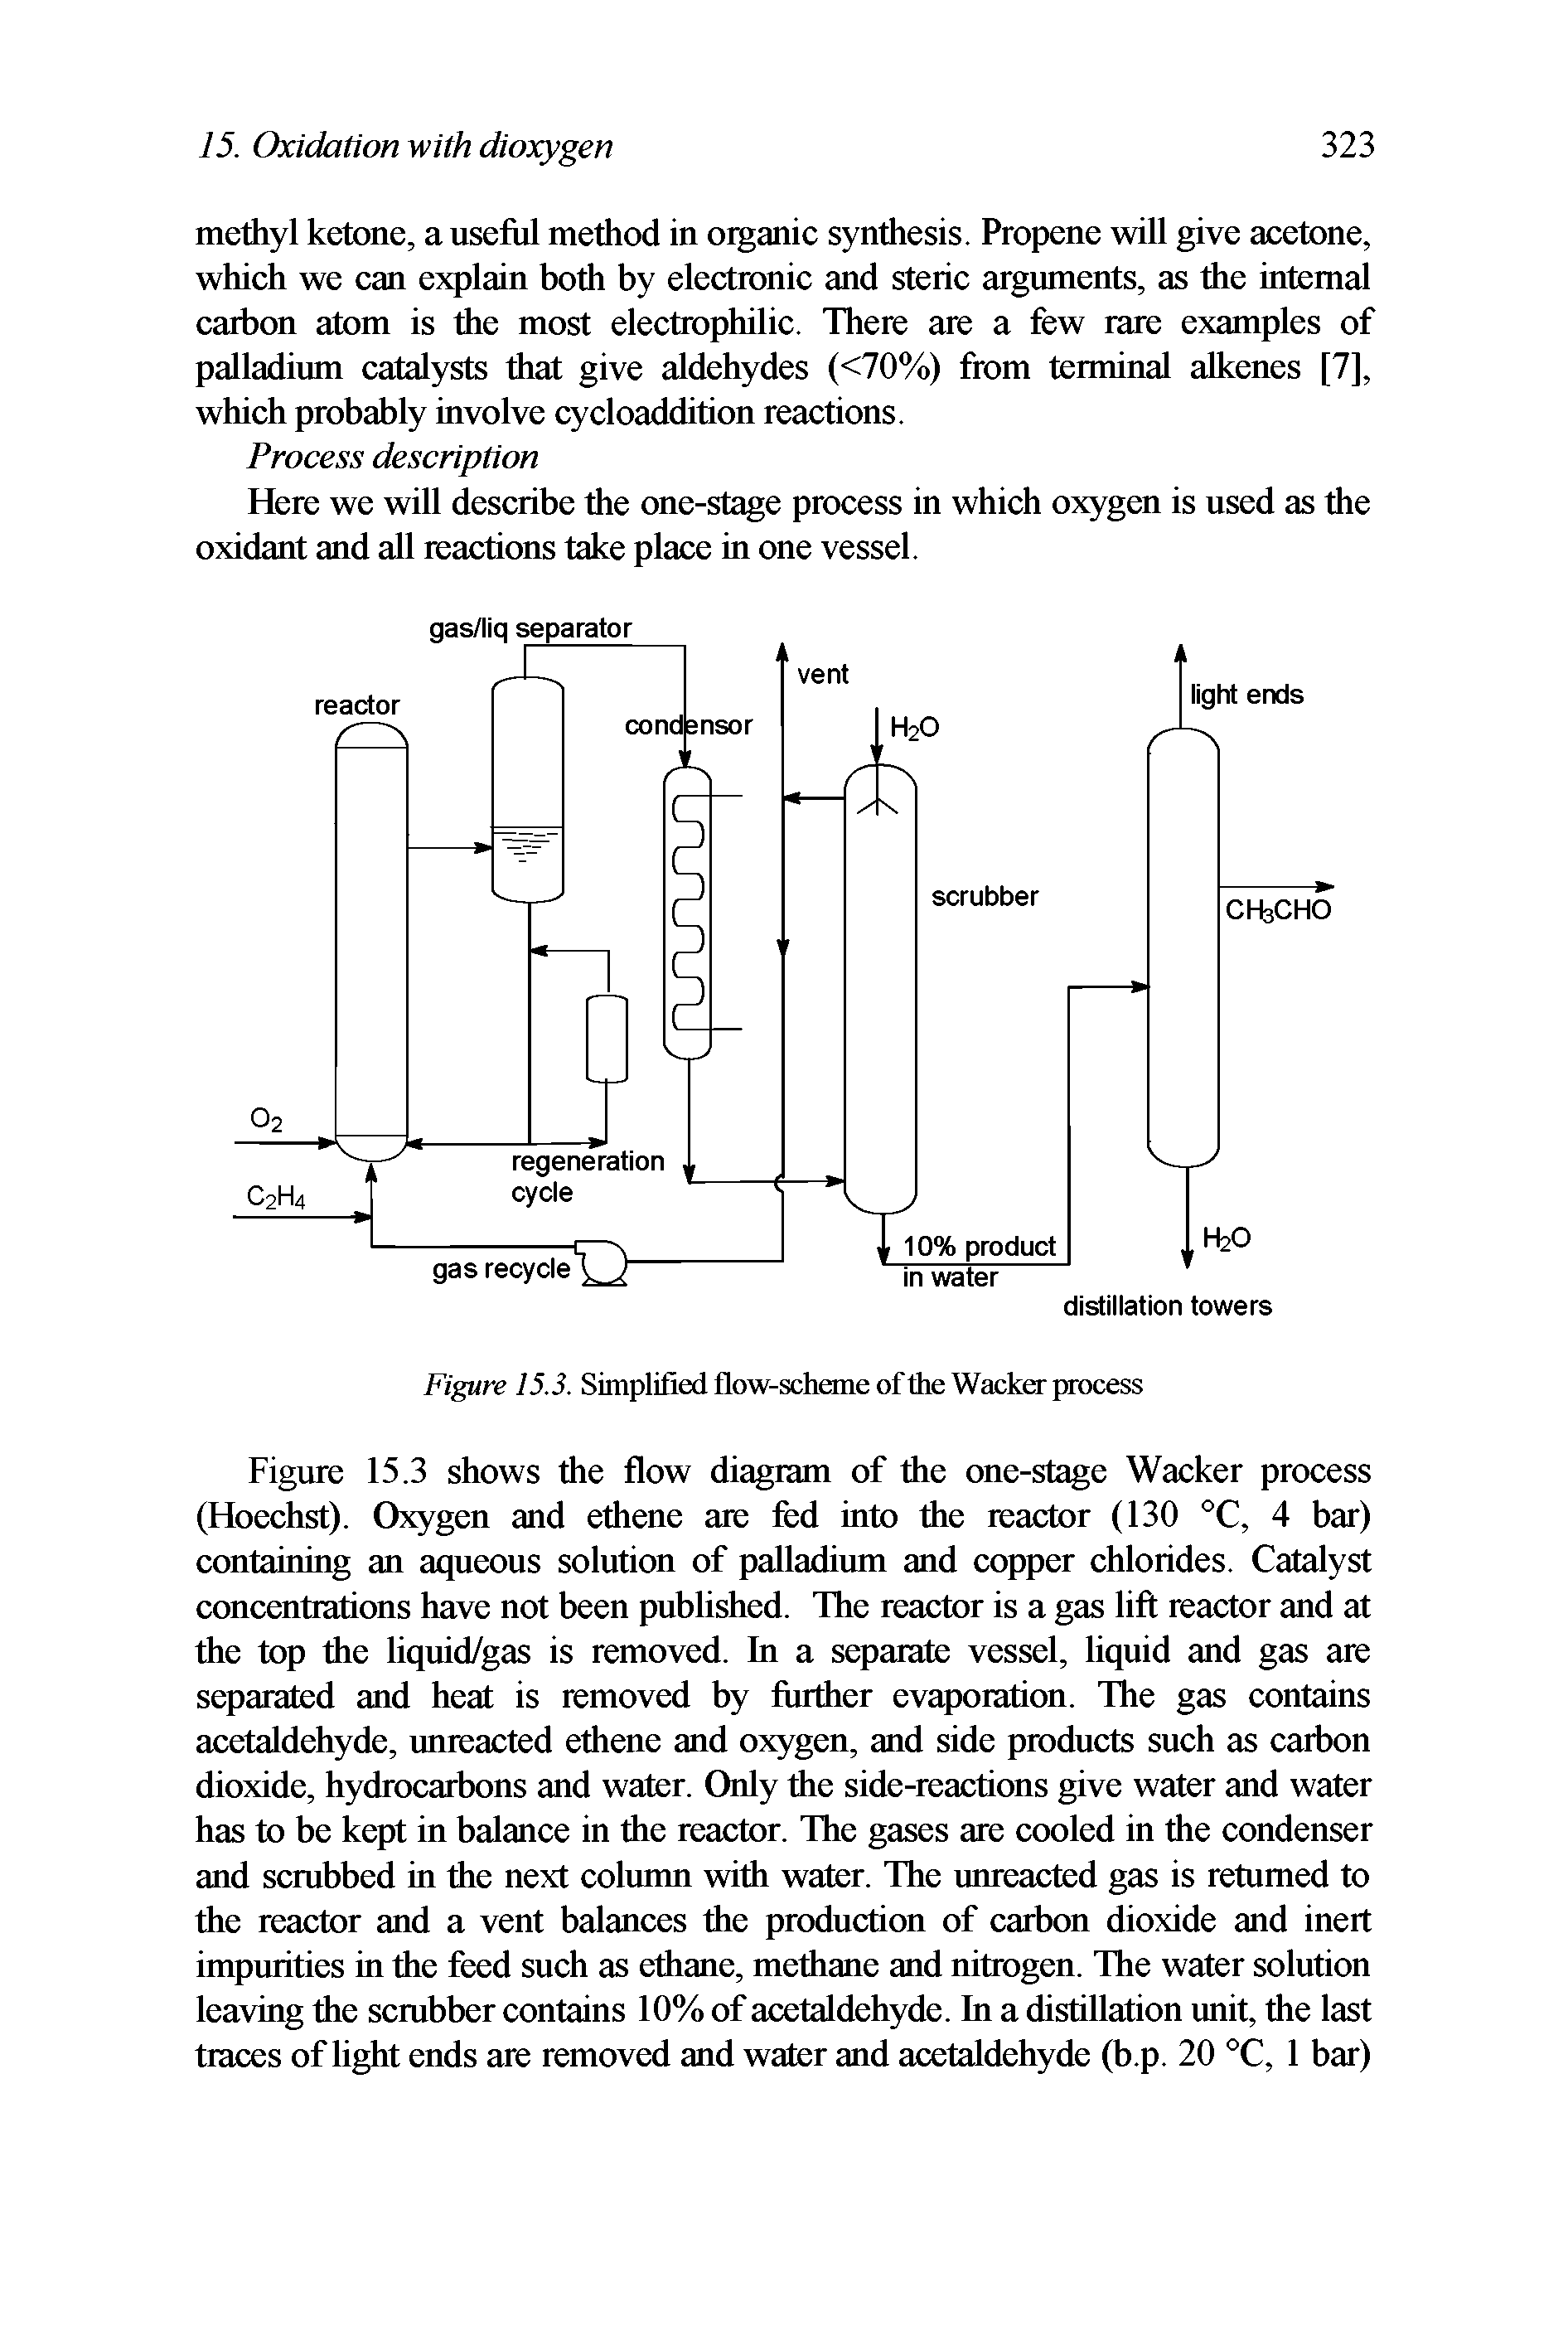 Figure 15.3. Simplified flow-scheme of the Wacker process...